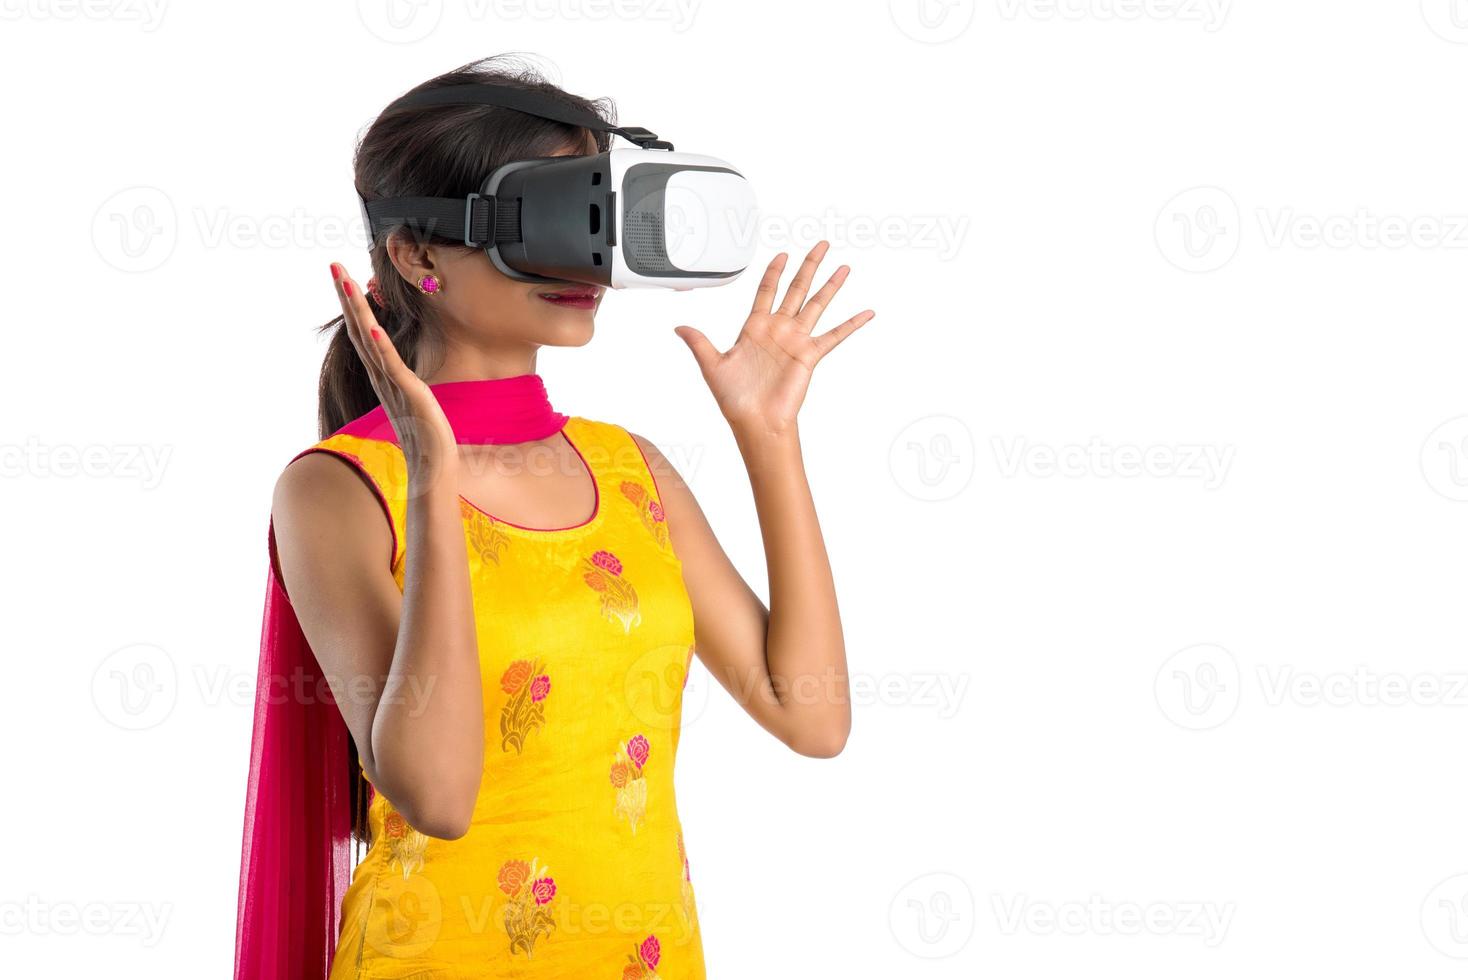 jovem tradicional indiana segurando e mostrando o dispositivo de vr, caixa de vr, óculos de proteção, fone de ouvido de óculos de realidade virtual 3d, garota com tecnologia futura de imagem moderna em fundo branco. foto